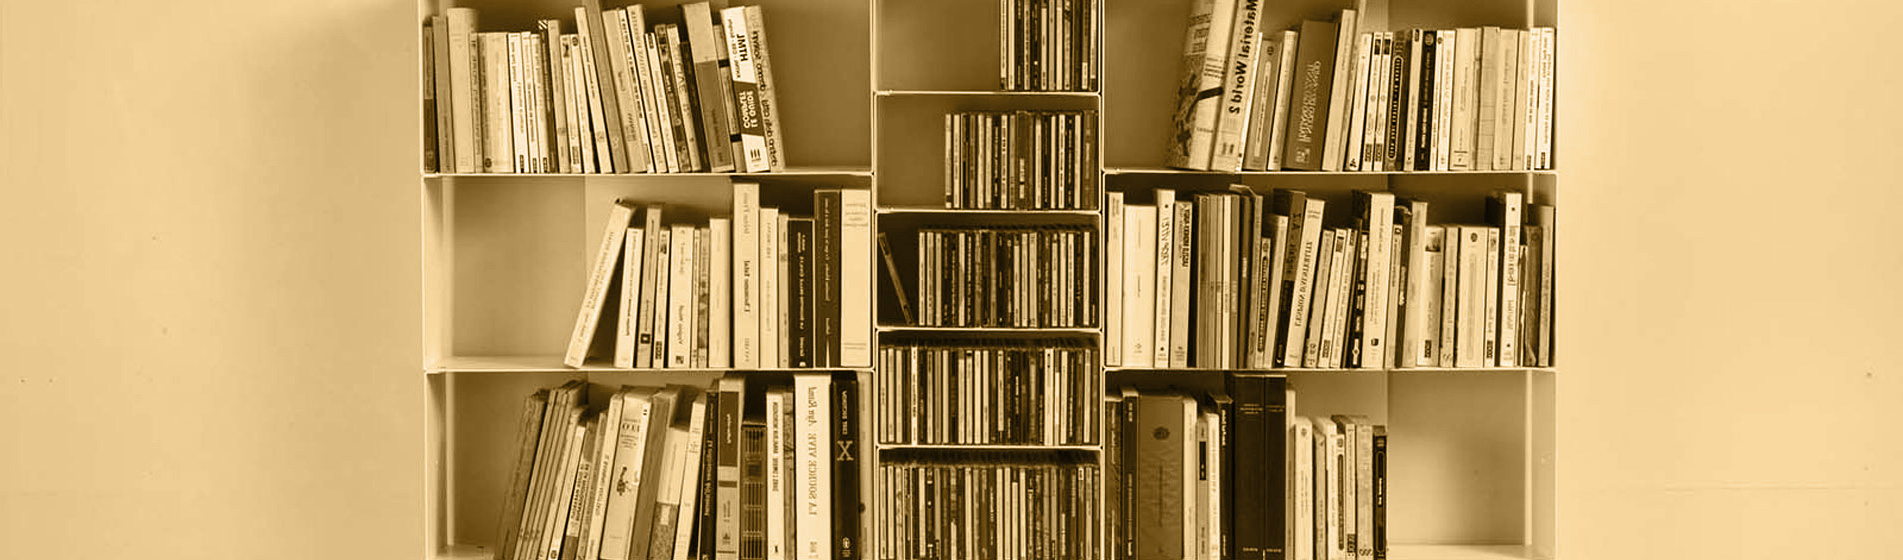 Rangement bibliothèque moderne